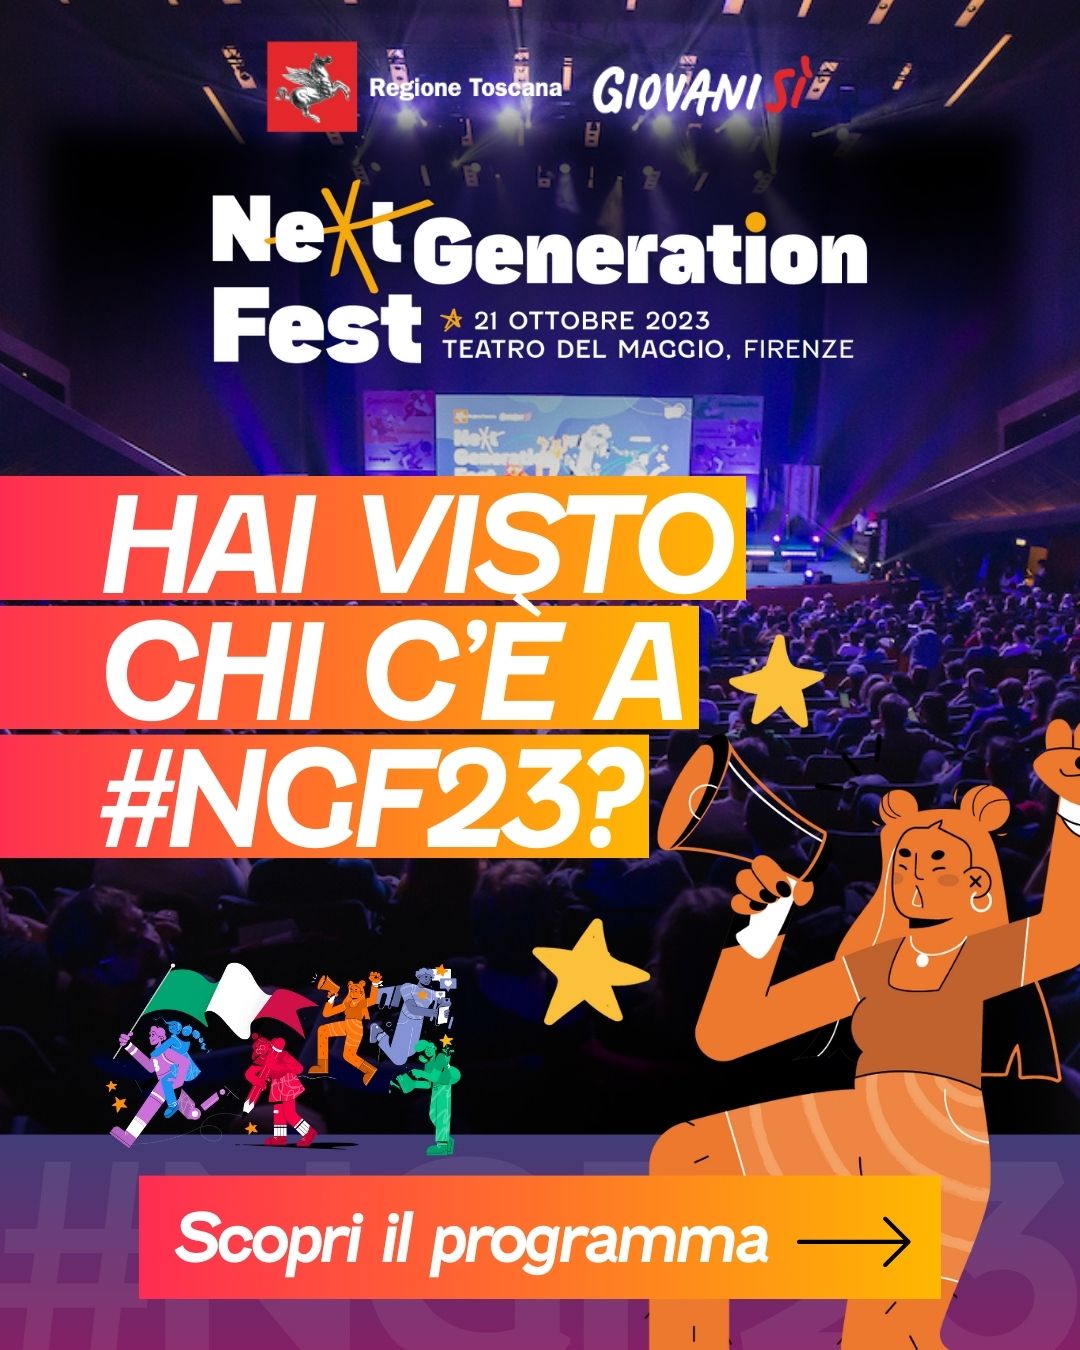 Next Generation Fest, lo speciale sul sito di Toscana Notizie